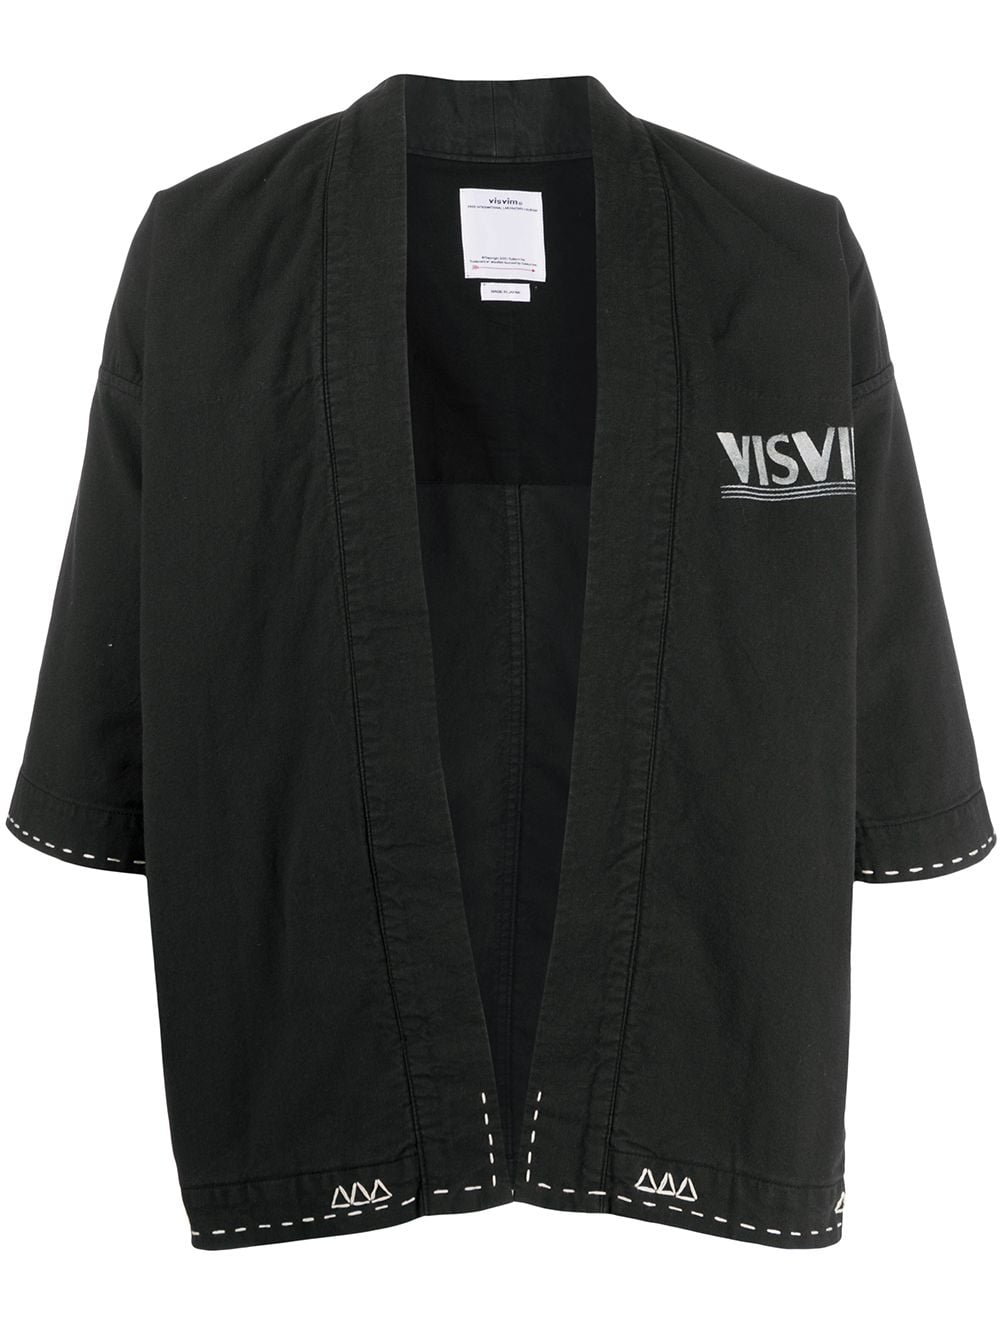 фото Visvim кимоно с контрастной строчкой